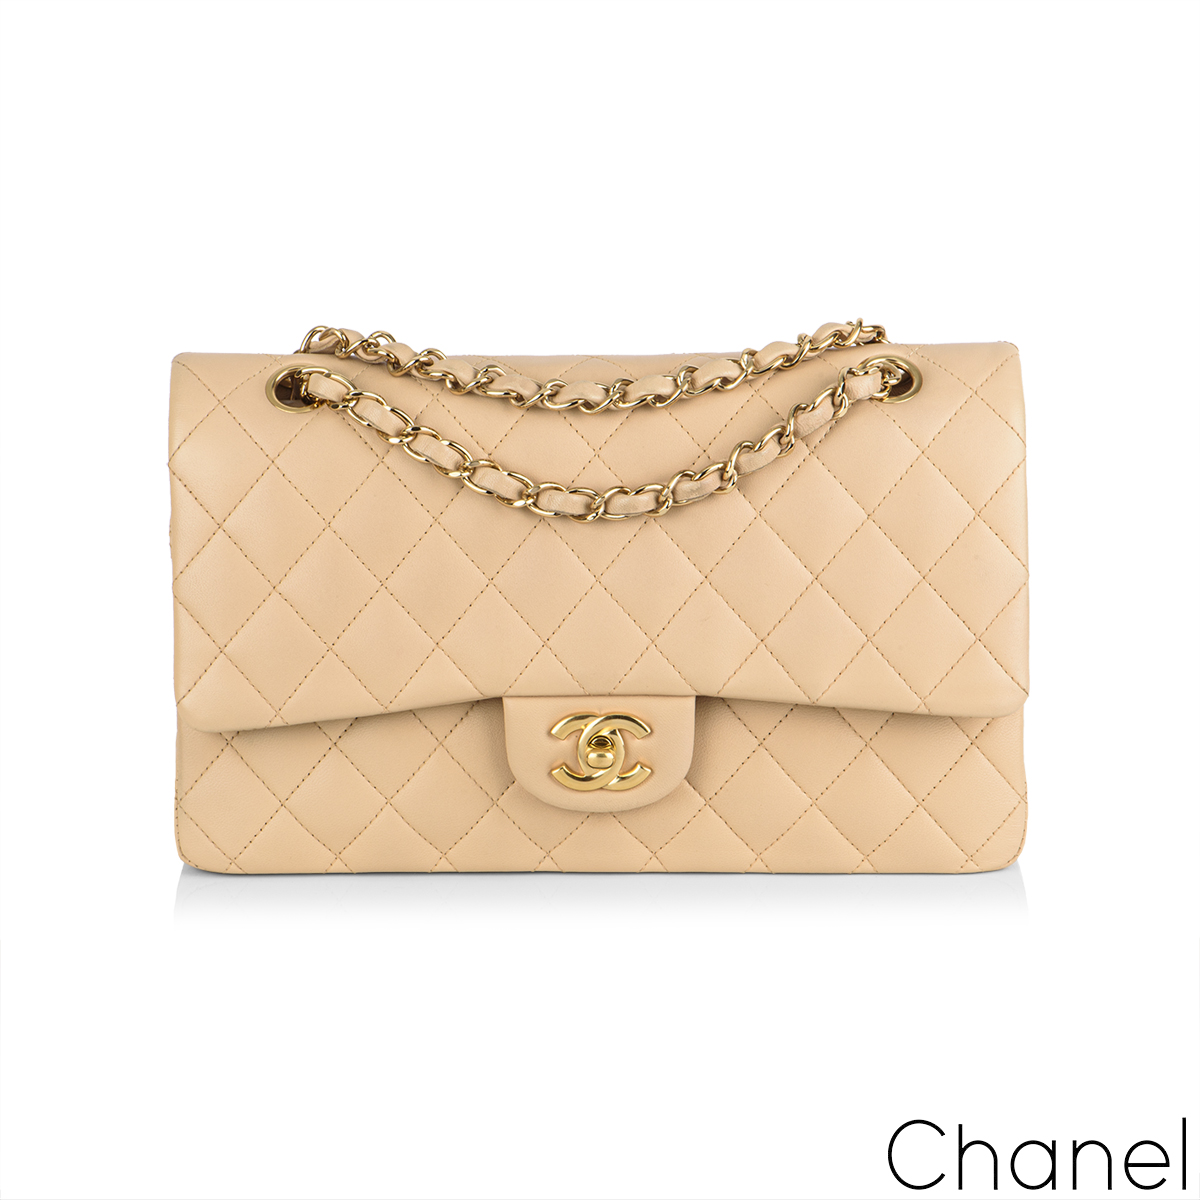 Chanel Beige Lambskin Medium Double Flap Bag